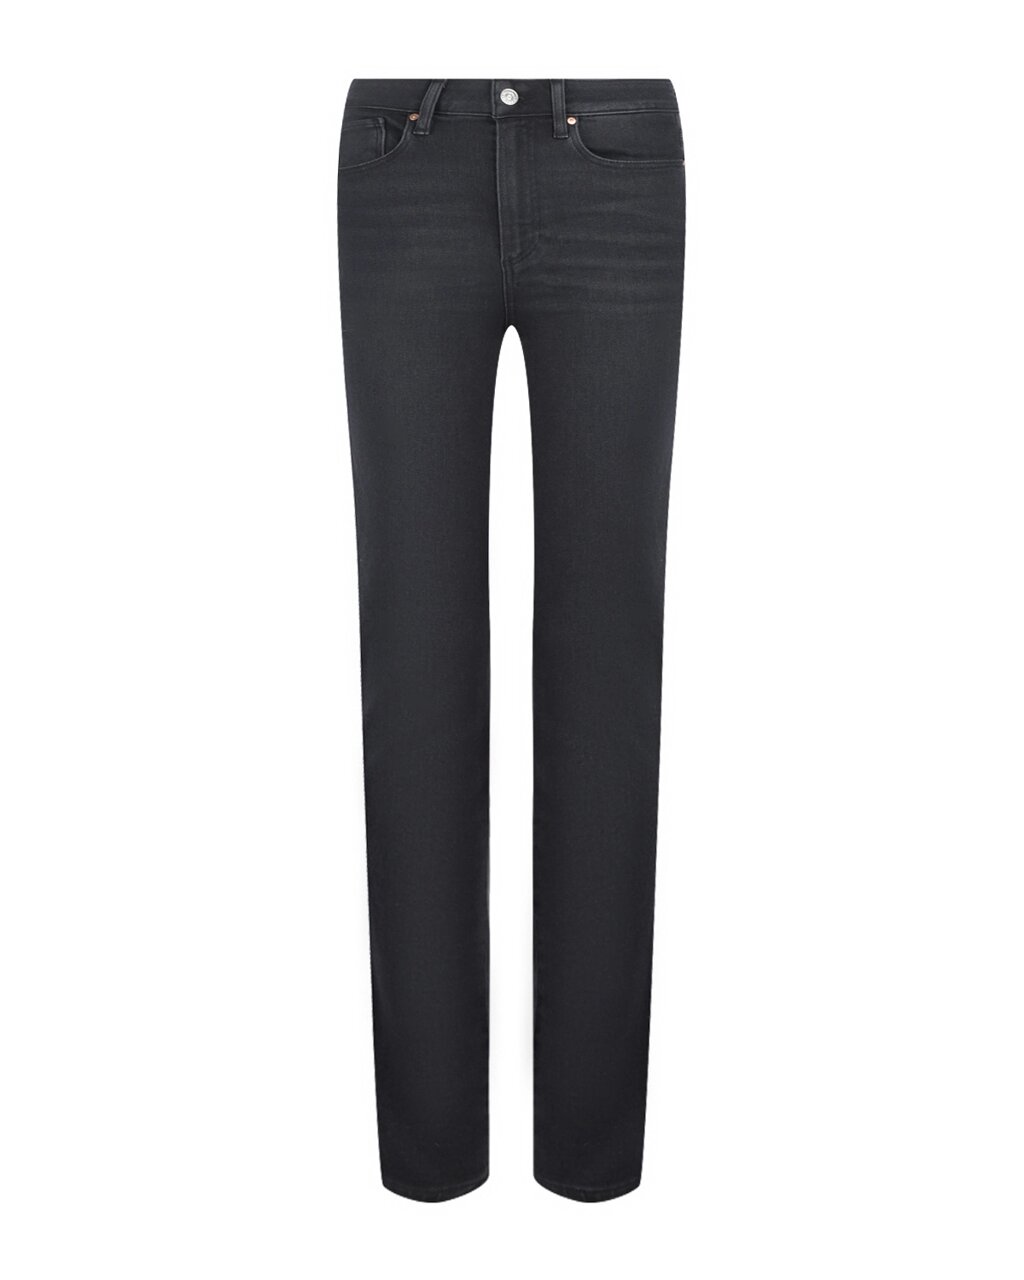 Зауженные джинсы длиной 7/8 Paige от компании Admi - фото 1